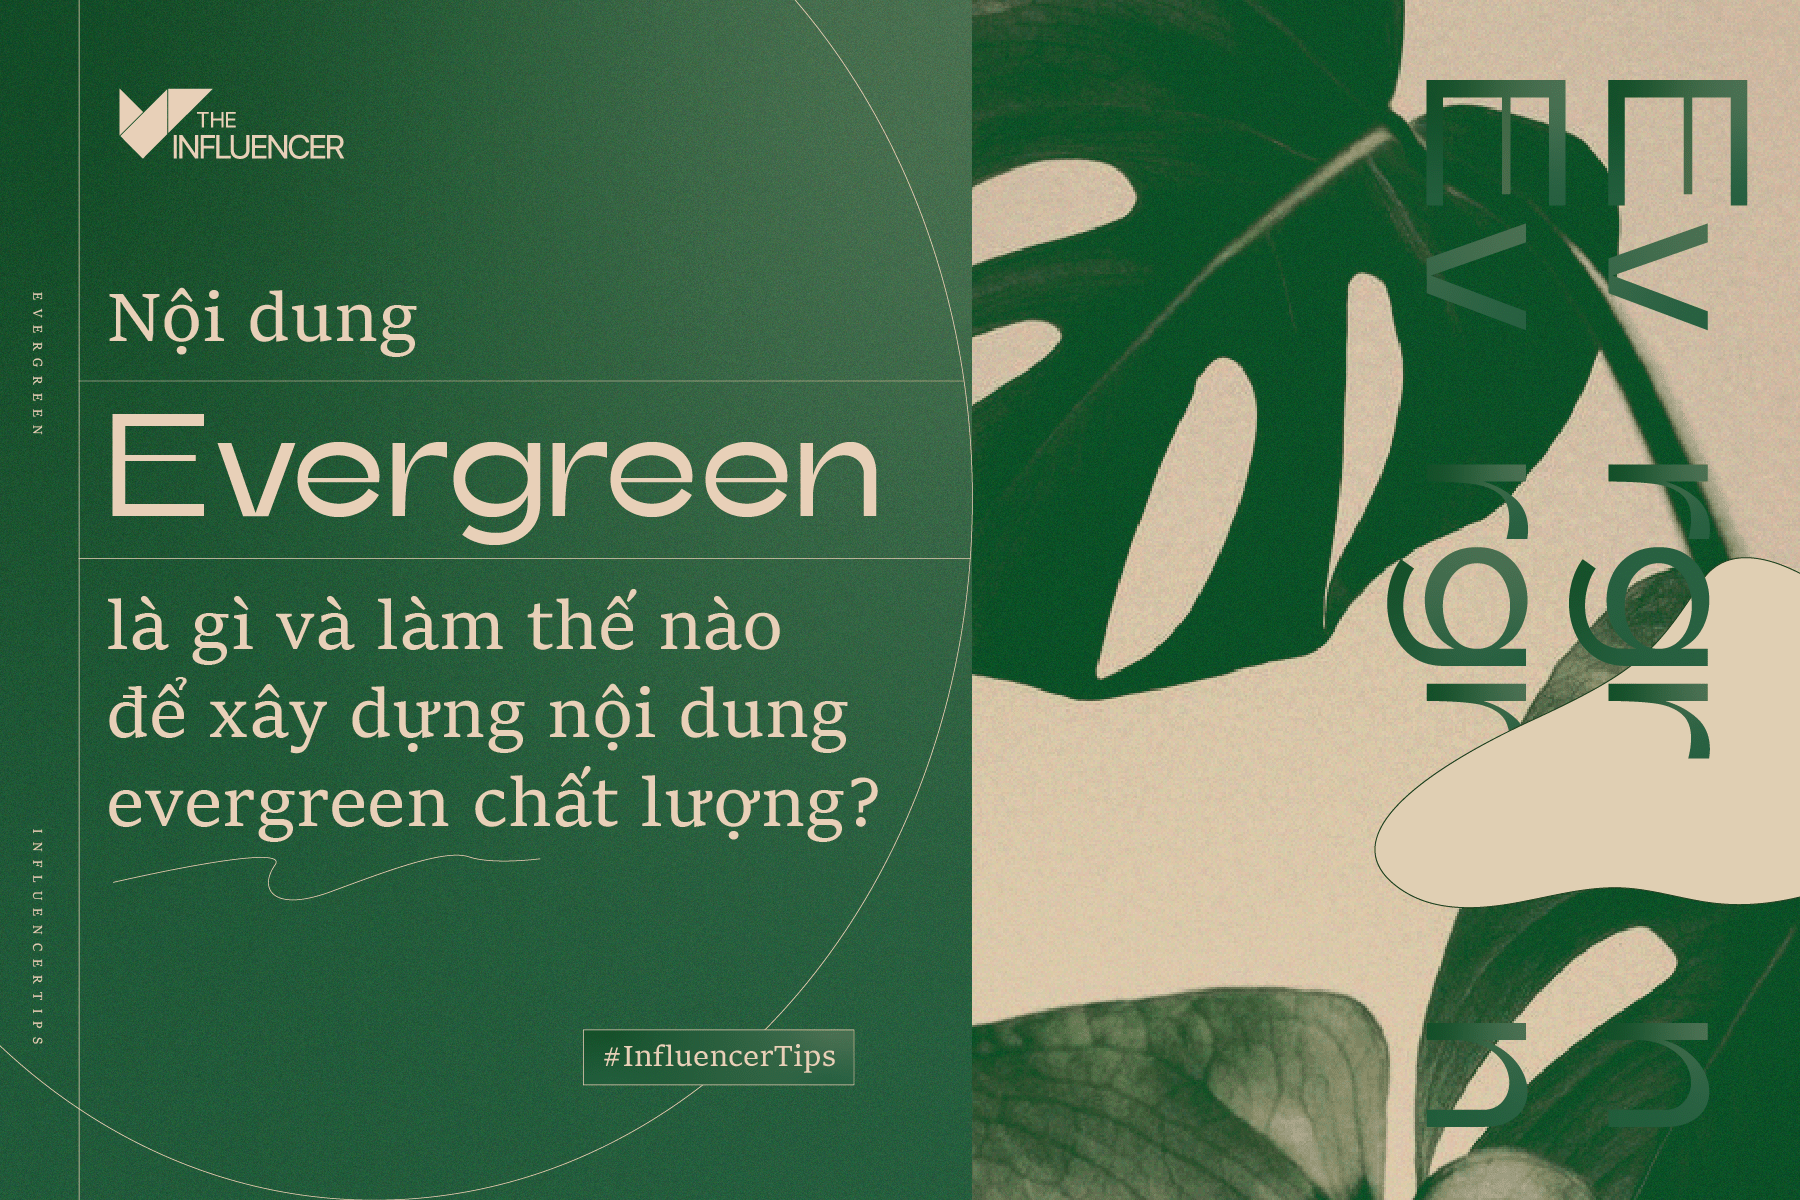 #InfluencerTips: Nội dung evergreen là gì và làm thế nào để xây dựng nội dung evergreen chất lượng?